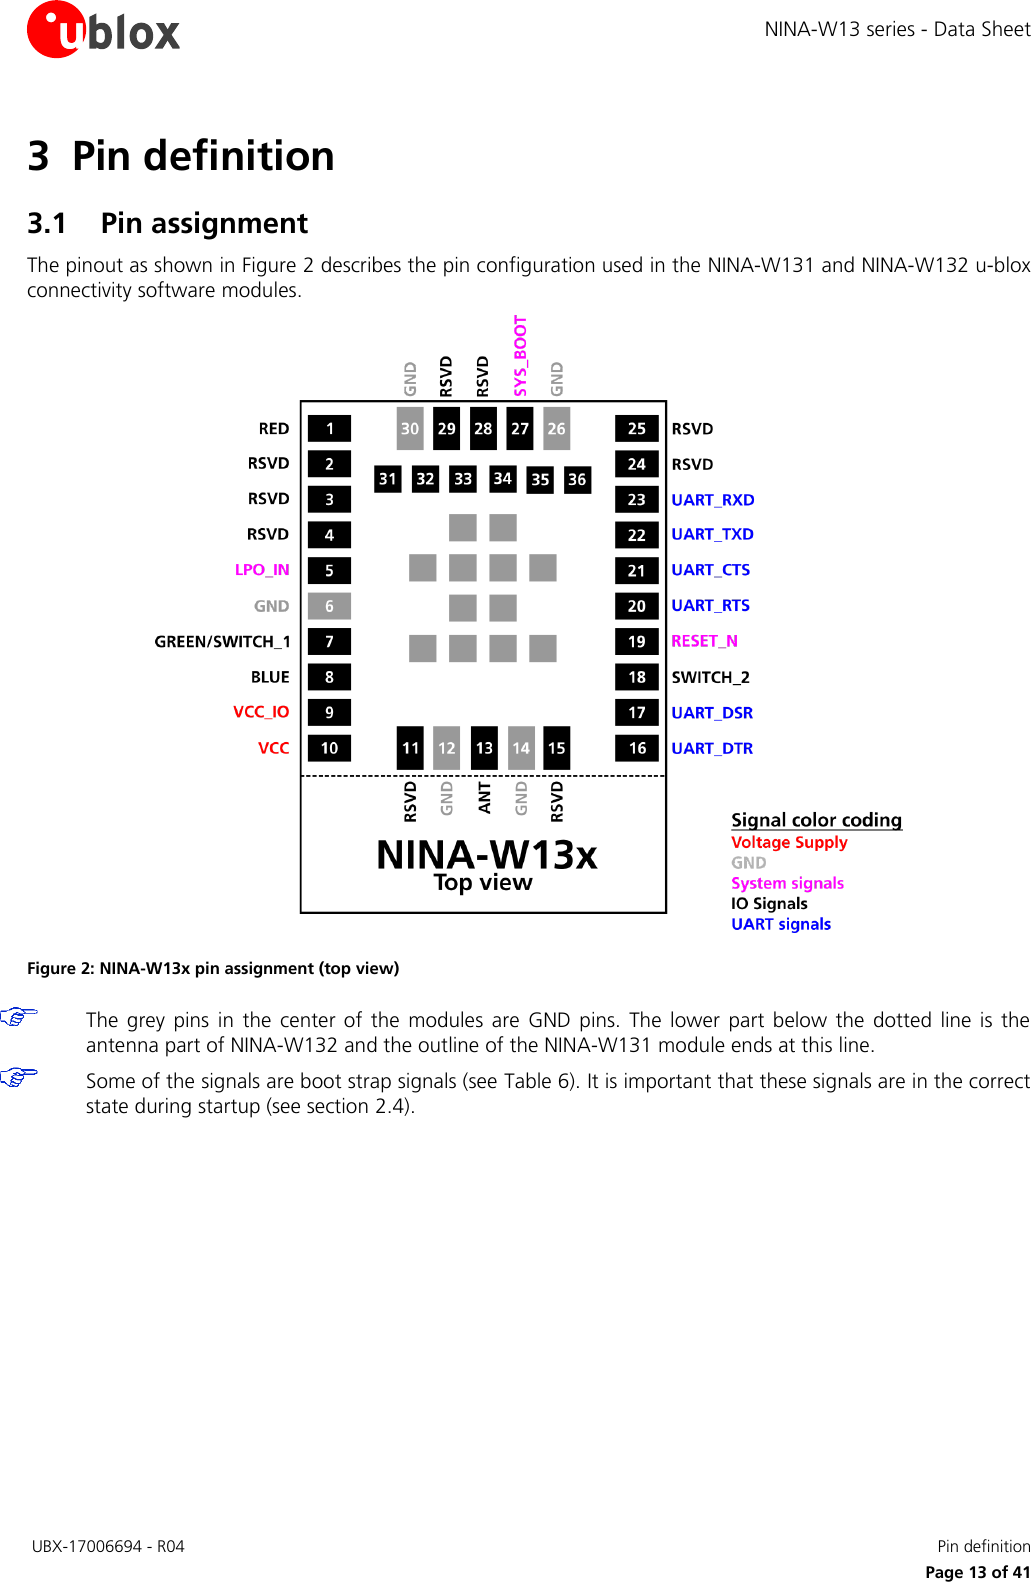 Page 13 of u blox NINAW13 Wireless Communication System Module User Manual NINA W13 series